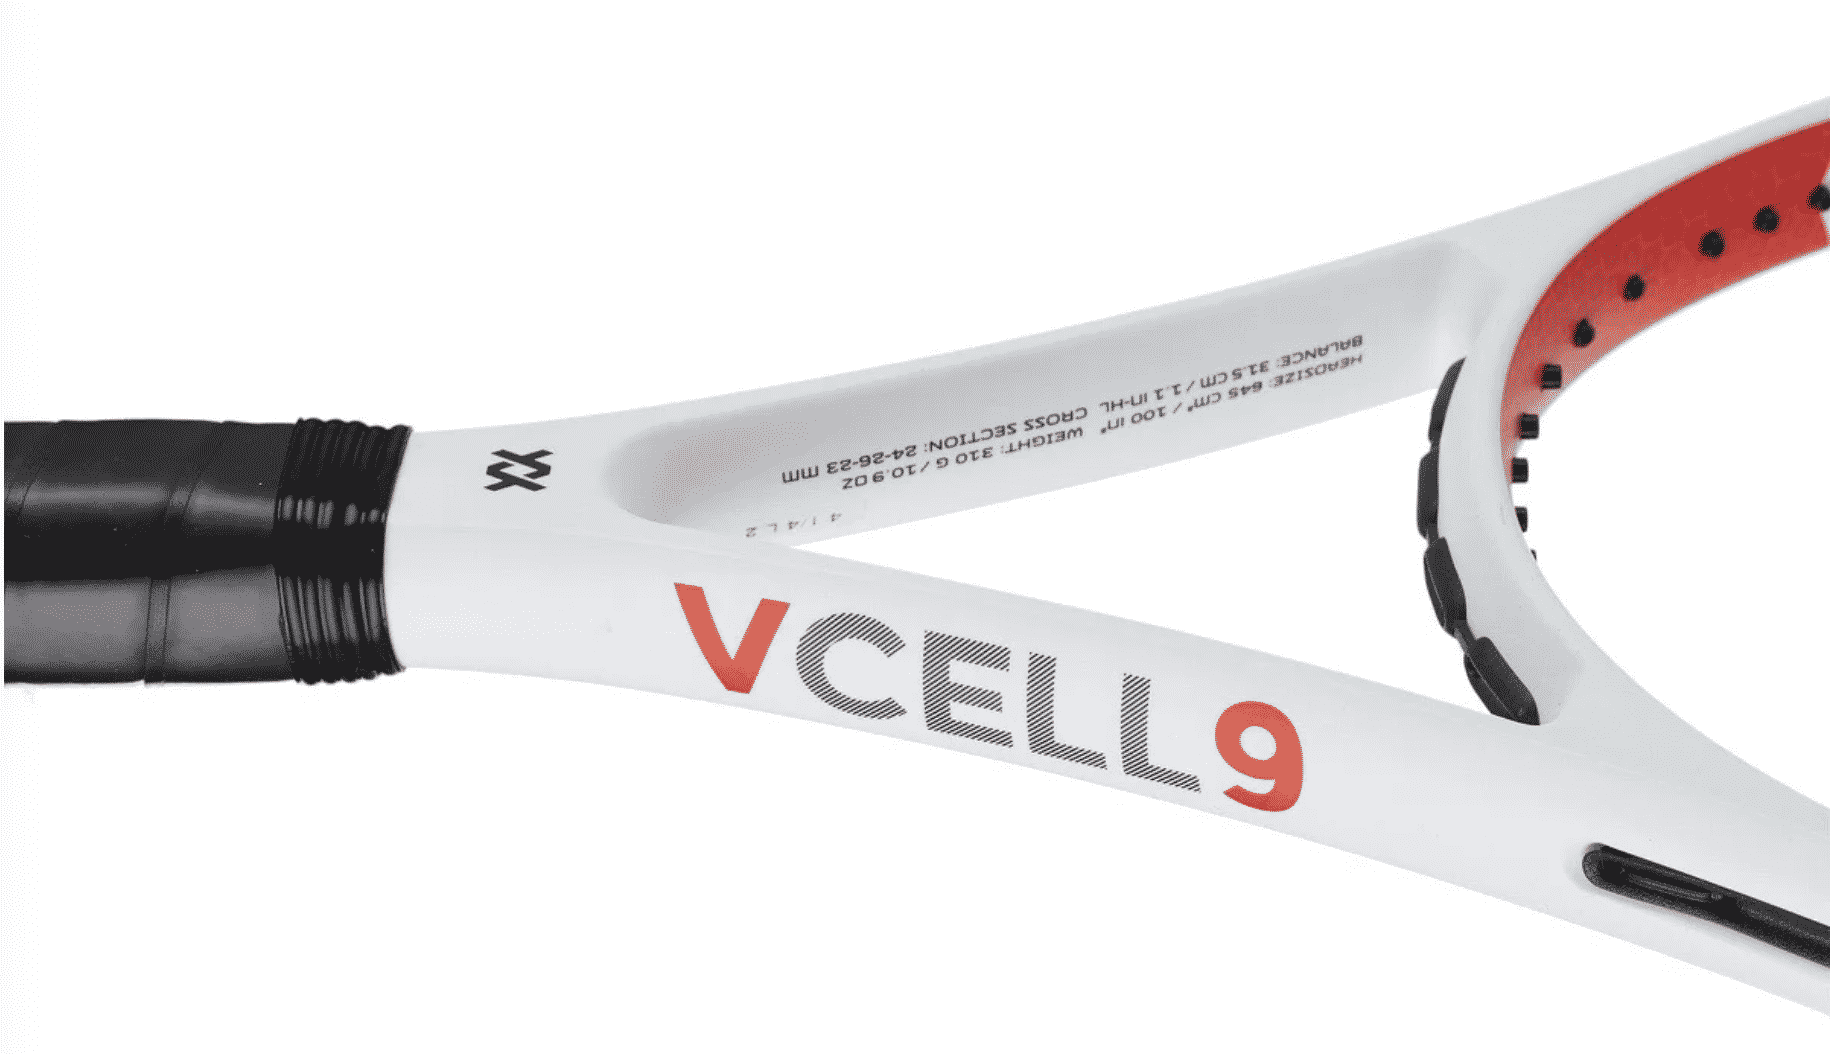 Volkl V-Cell 9 2020